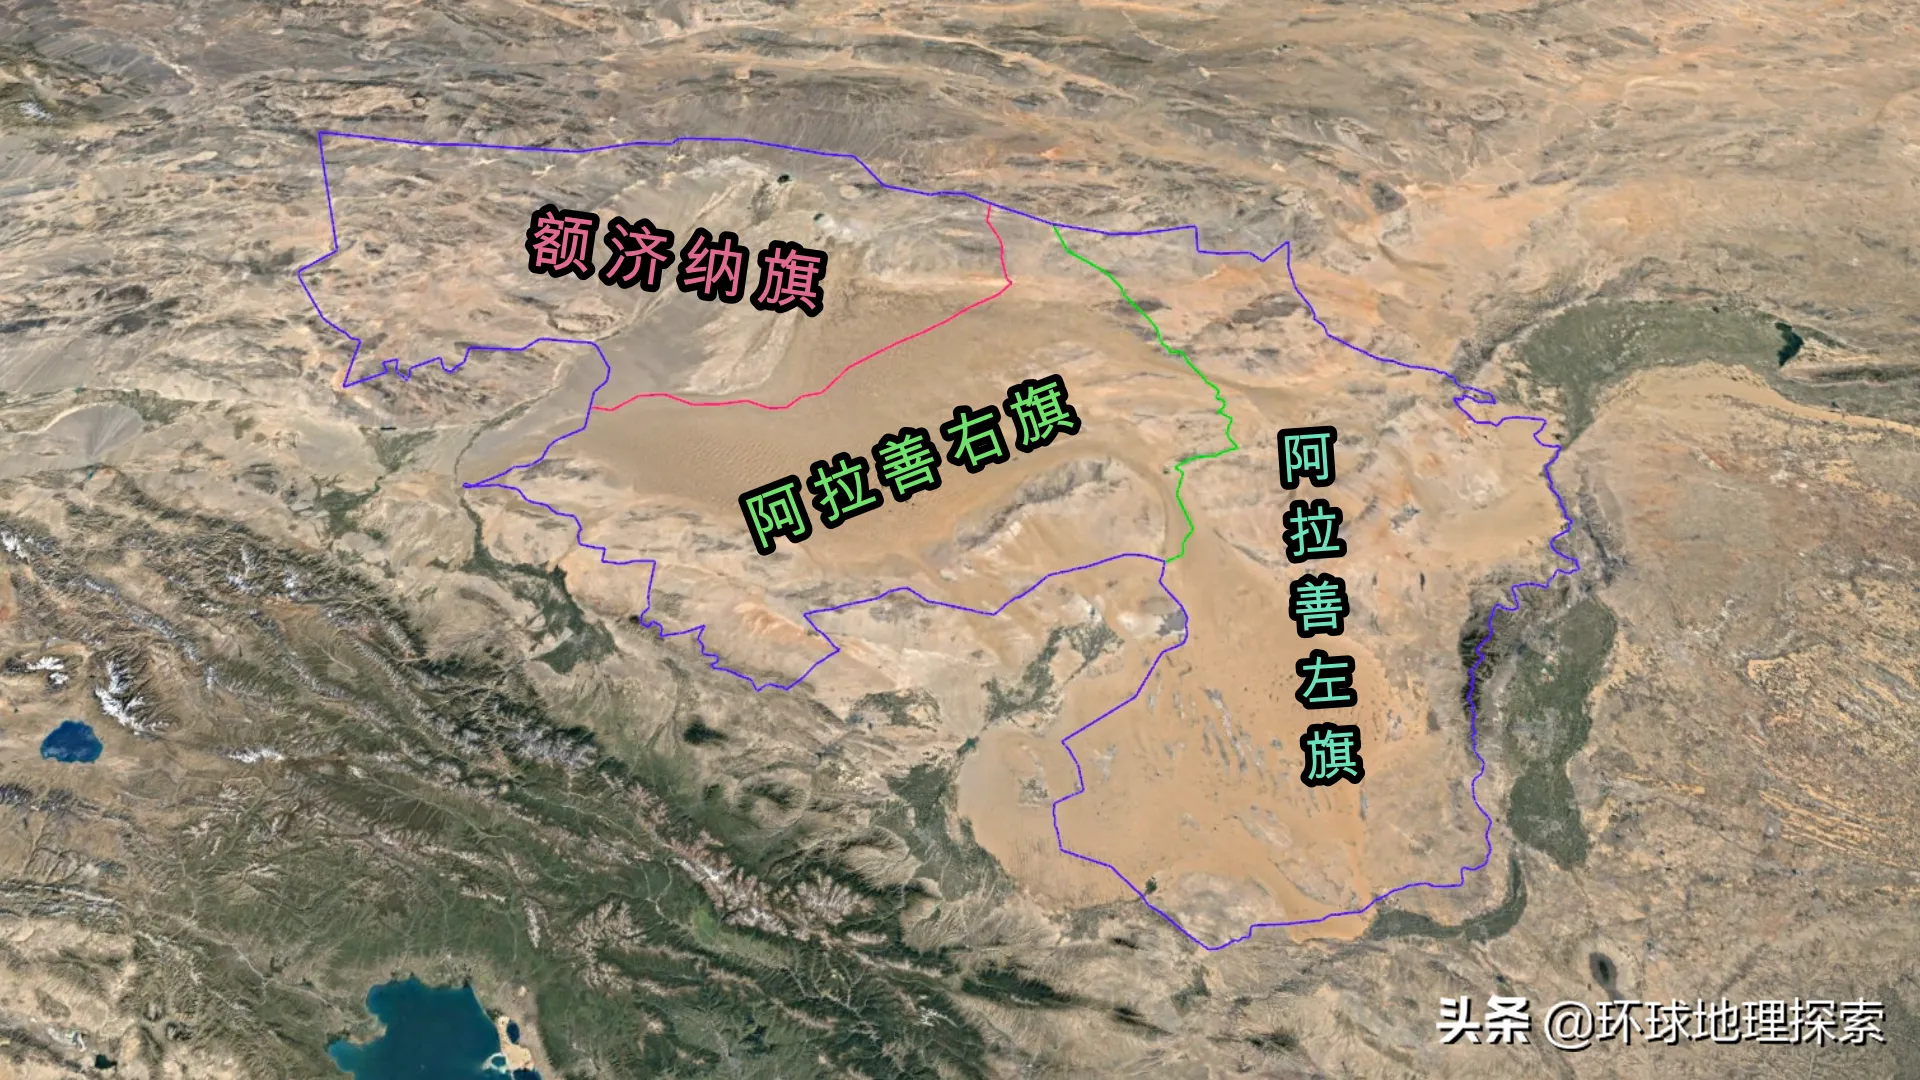 阿拉善在哪里 | 内蒙古自治区阿拉善地区的概况简介